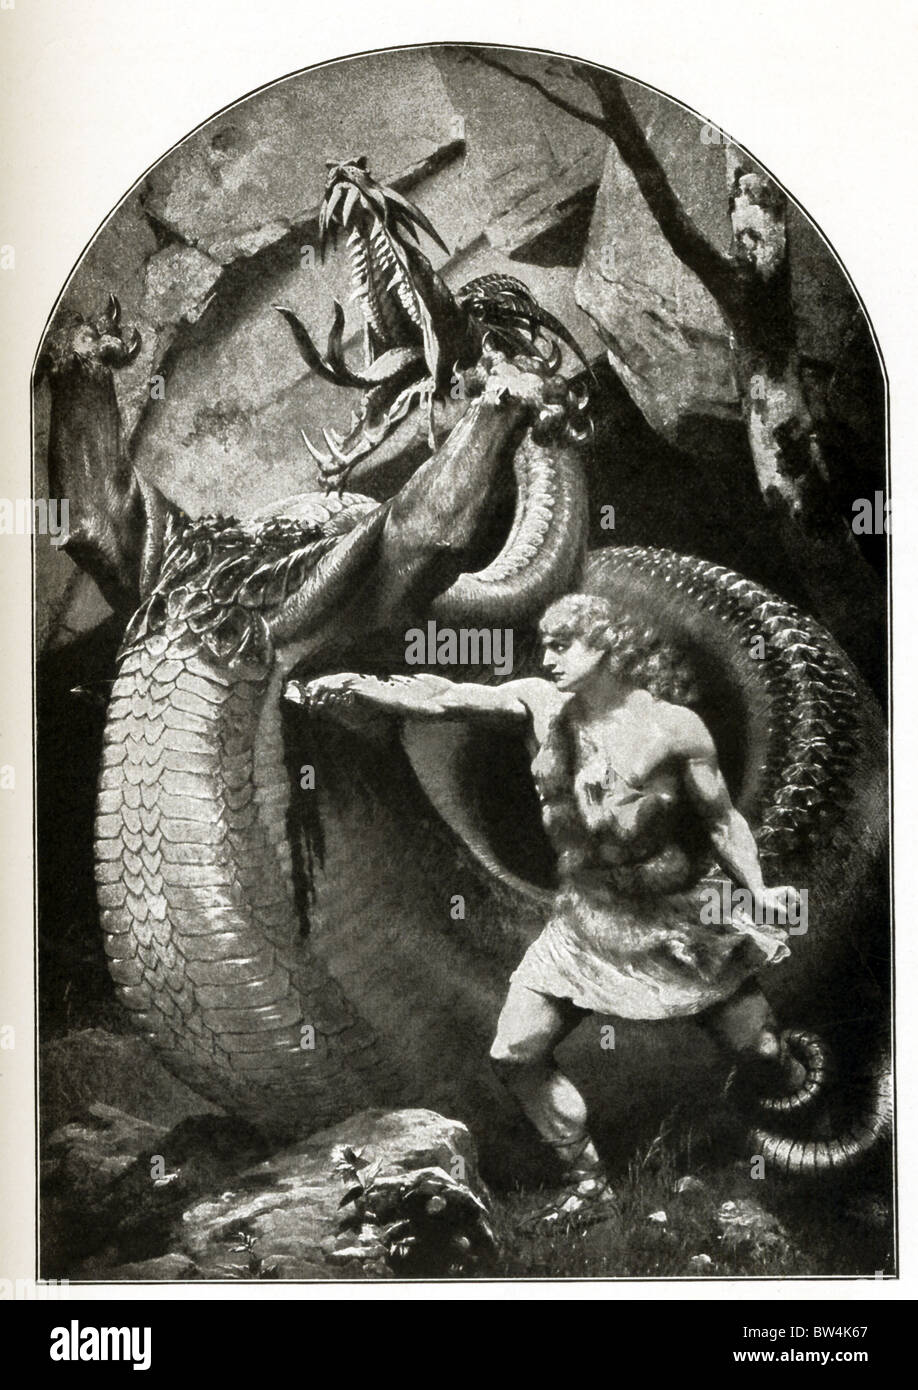 Siegfried, il famoso eroe della mitologia tedesca e figlio del re Siegmund, ucciso il drago Fafnir e vinto Brunhild. Foto Stock